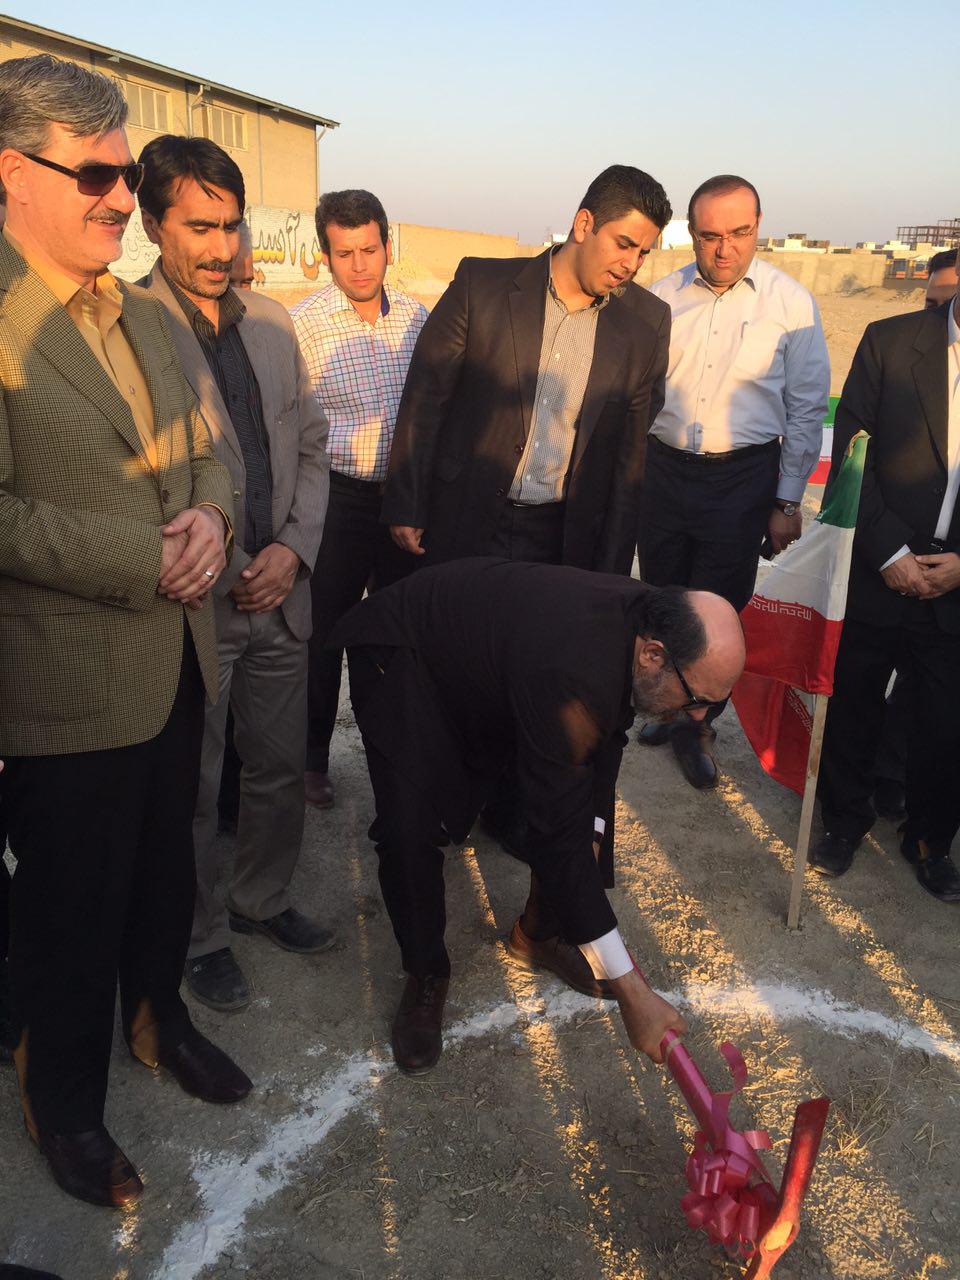 کلنگ احداث سوله ورزشی دانشگاه آزاد اسلامی شیروان به زمین زده شد.